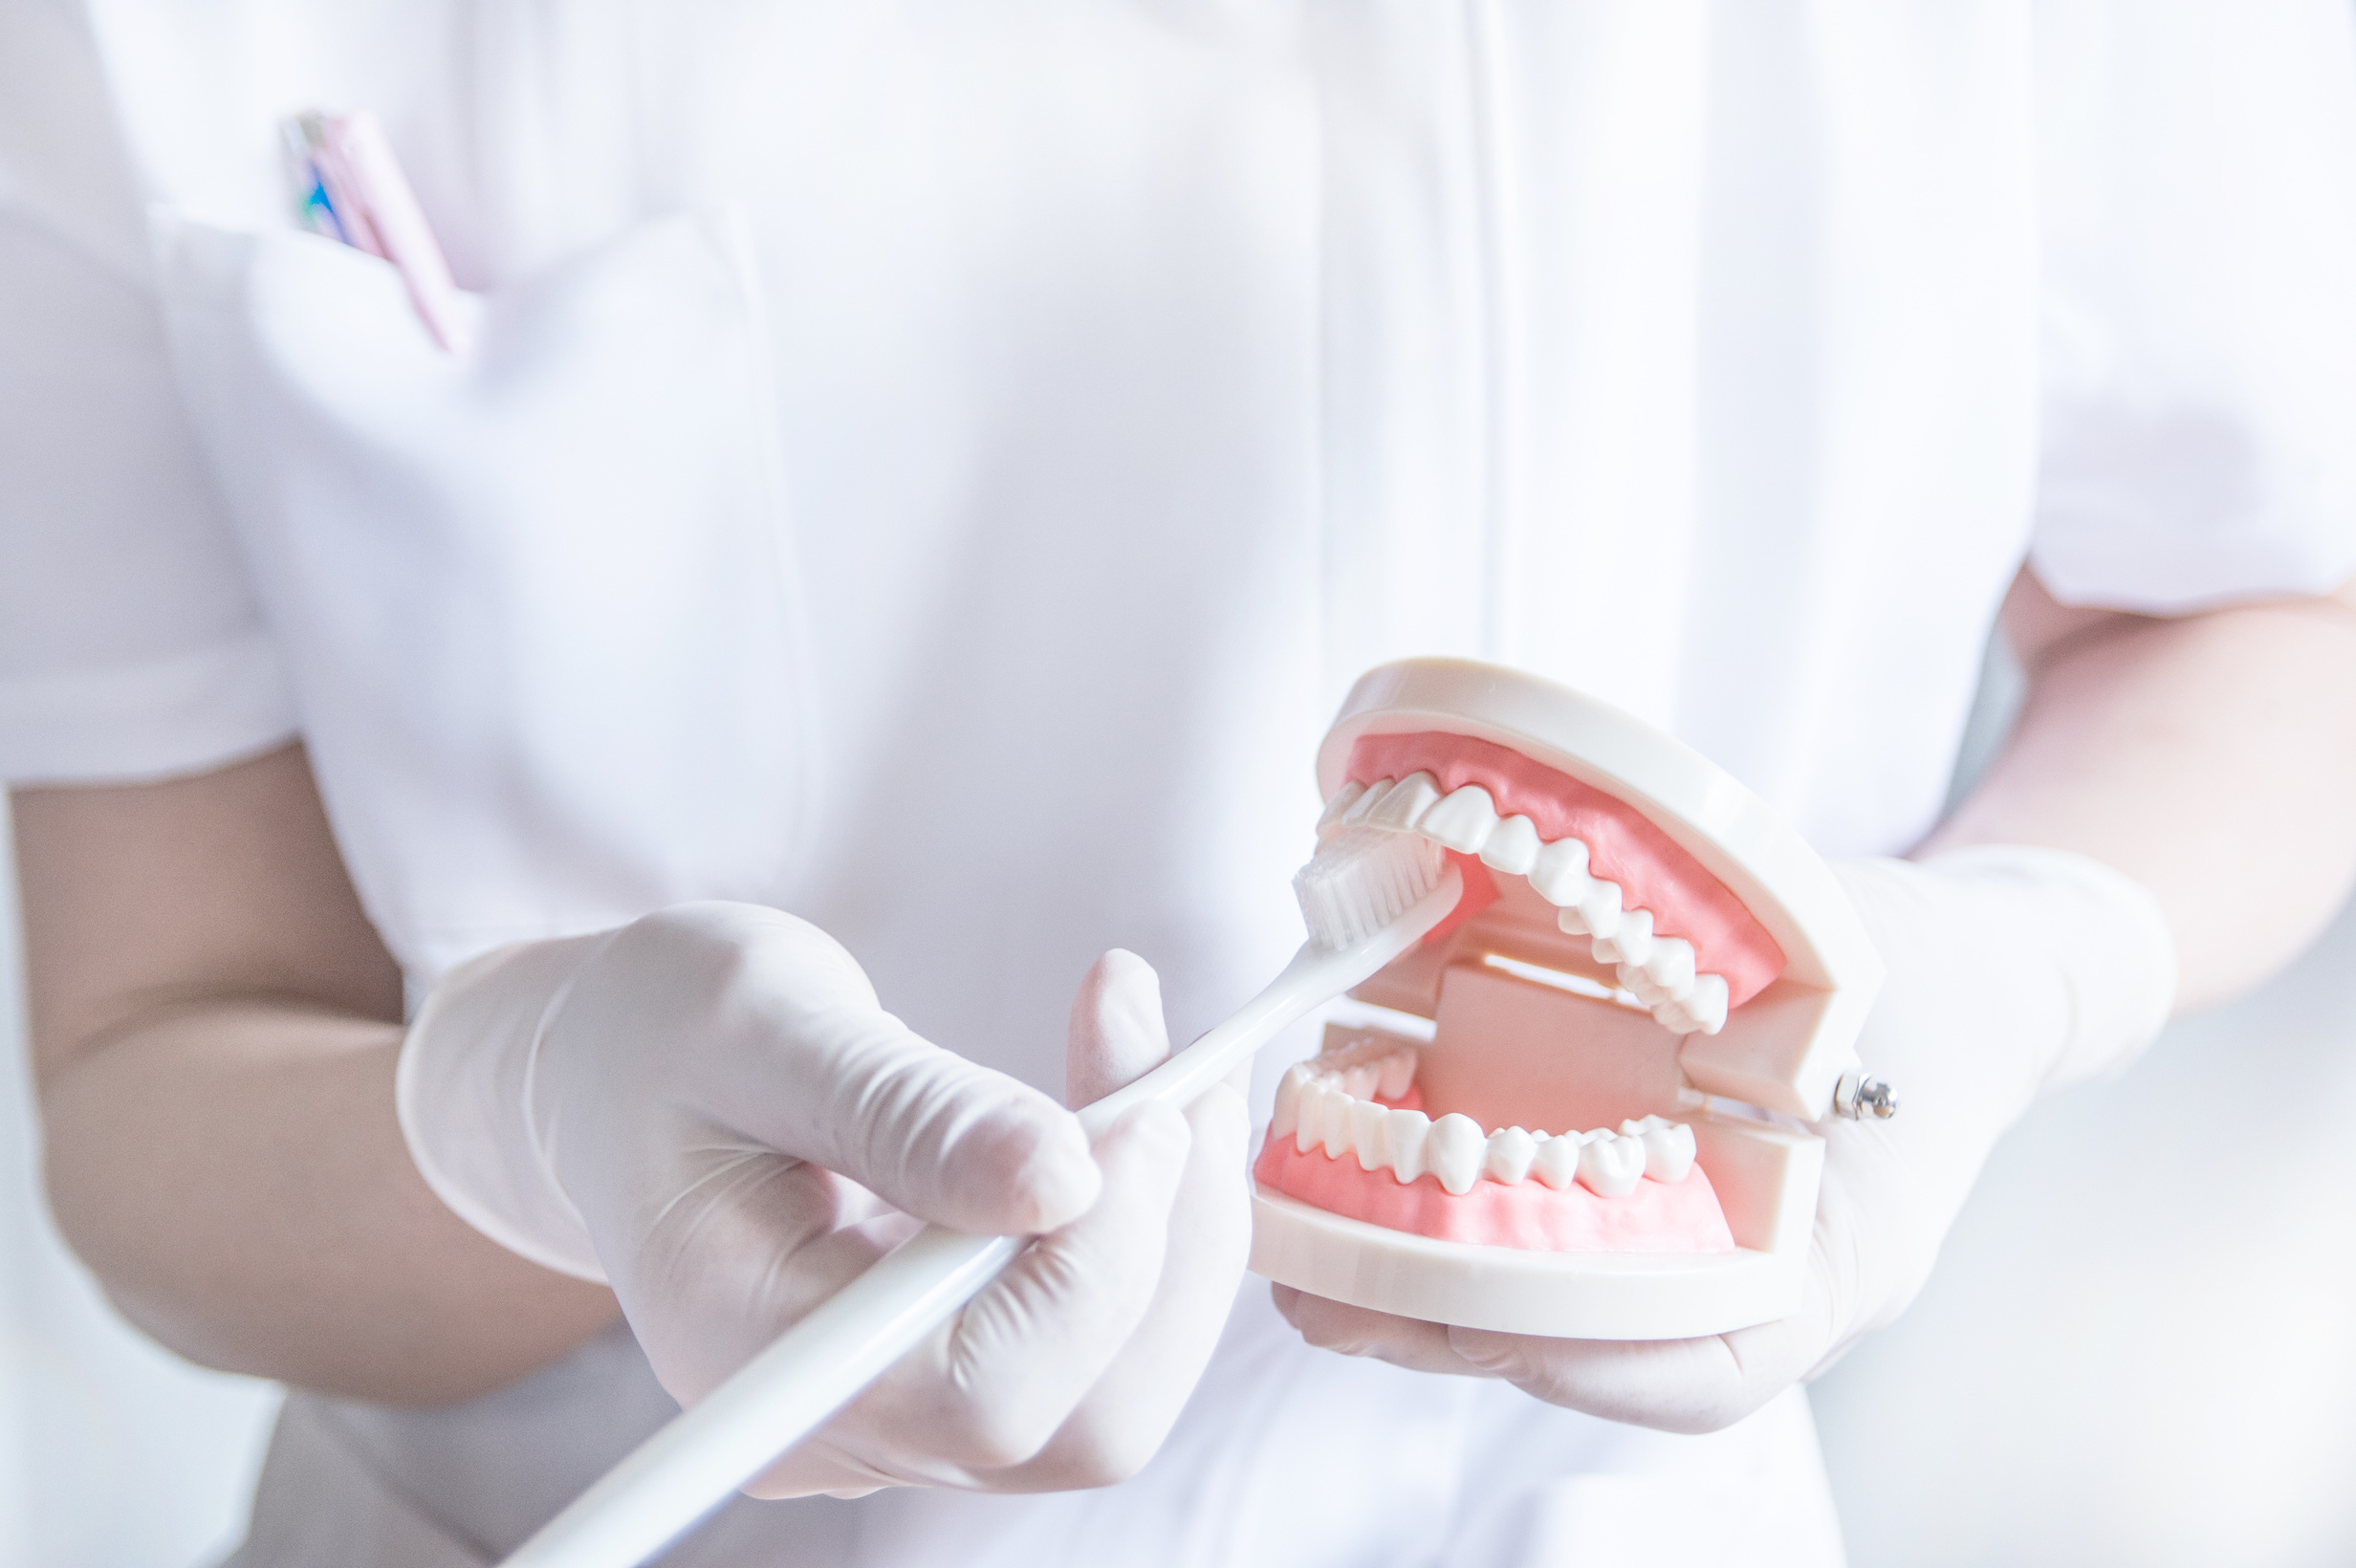 歯周病を予防するための歯磨きのポイントを説明